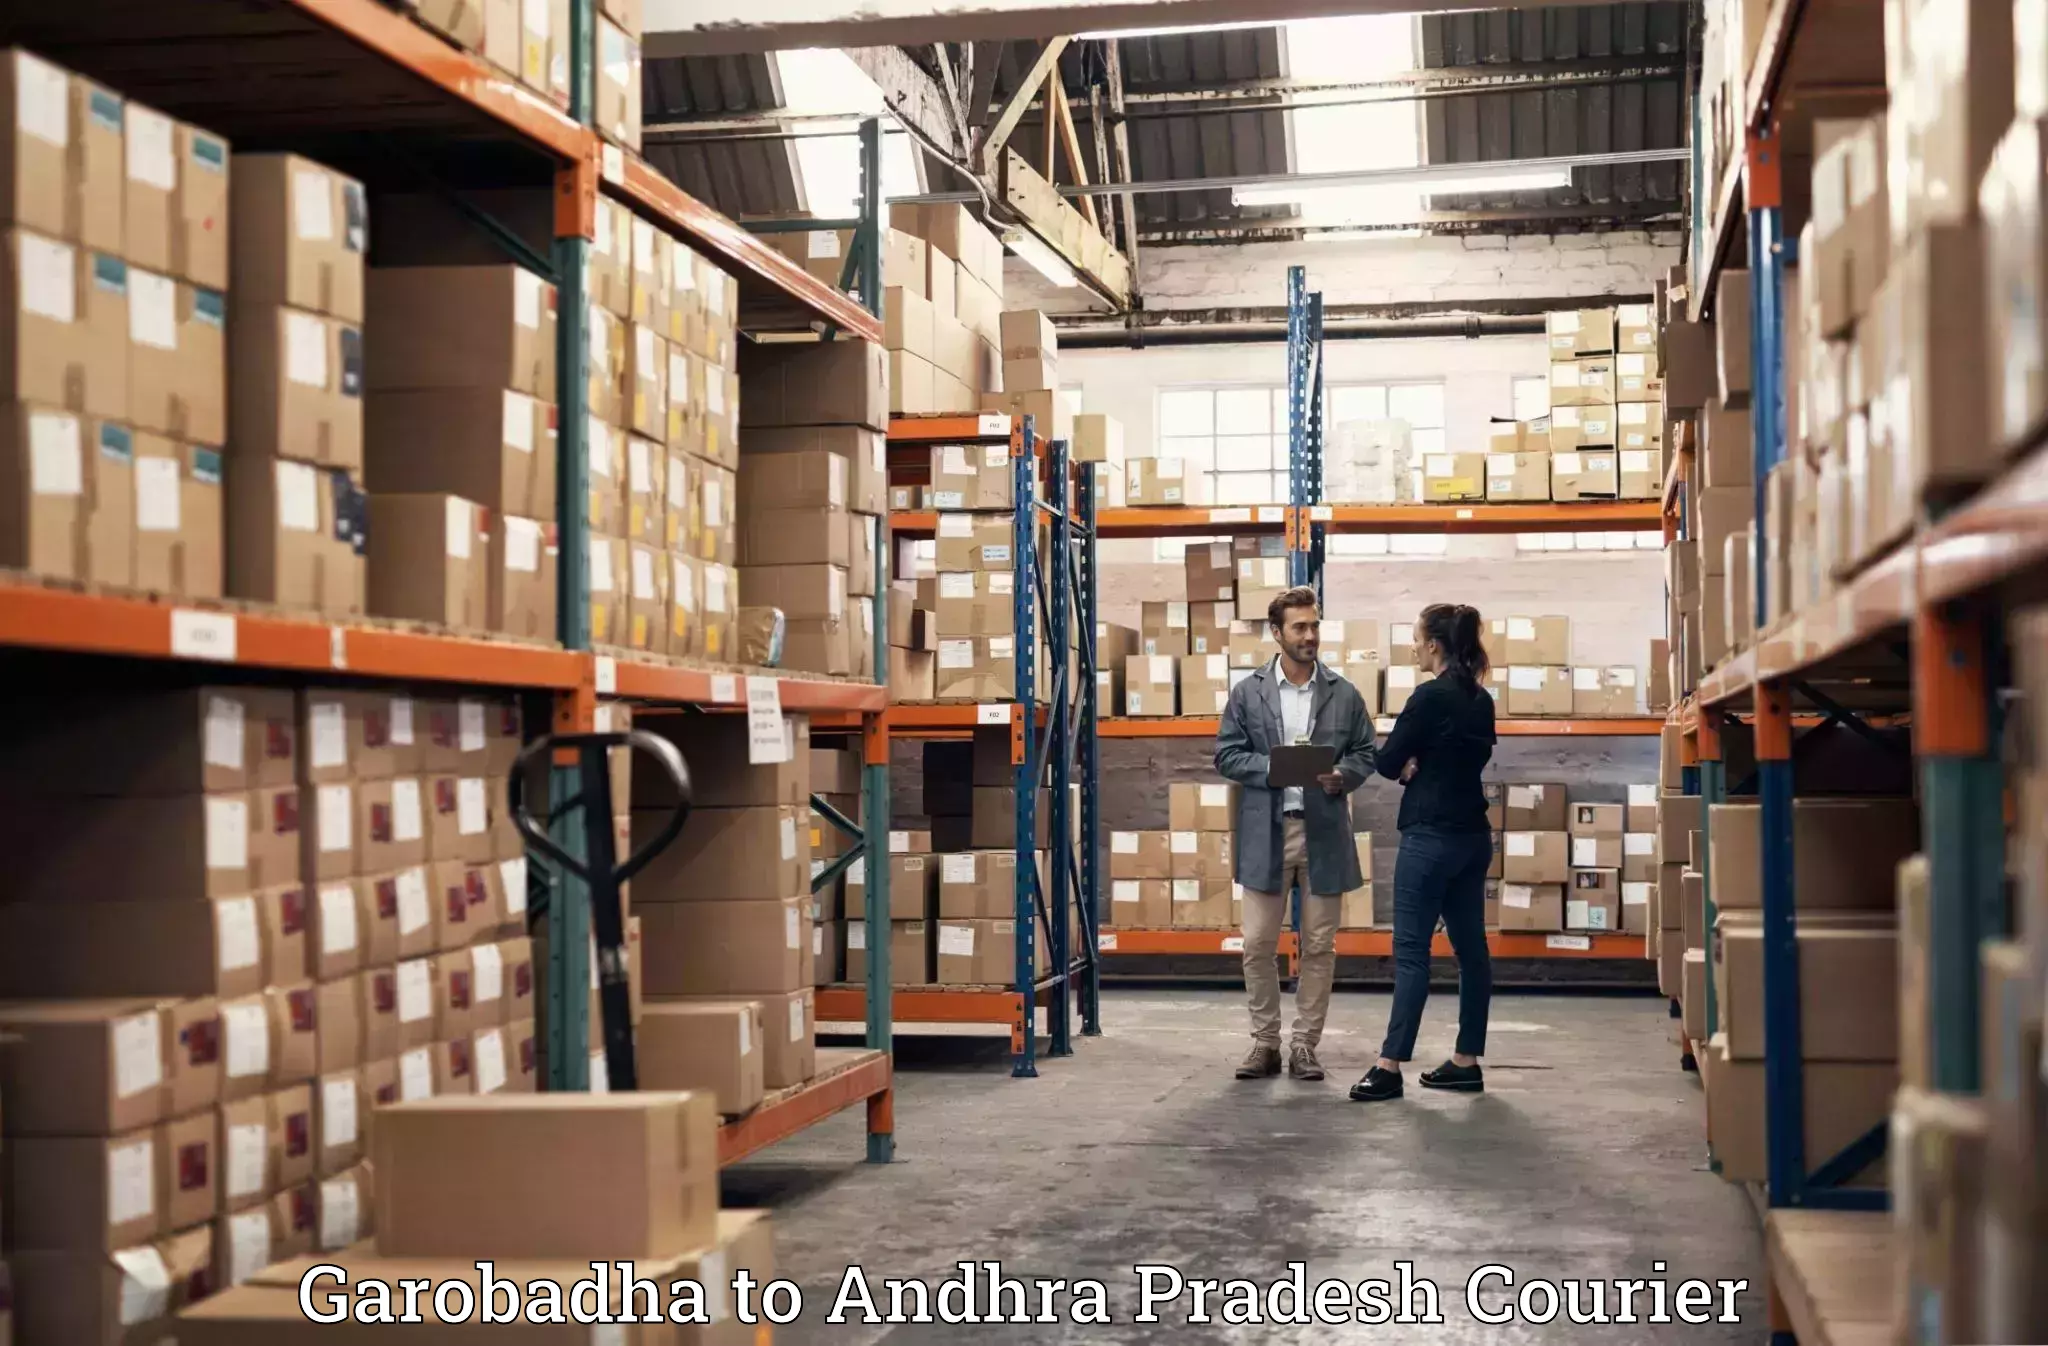 Residential moving experts Garobadha to Andhra Pradesh